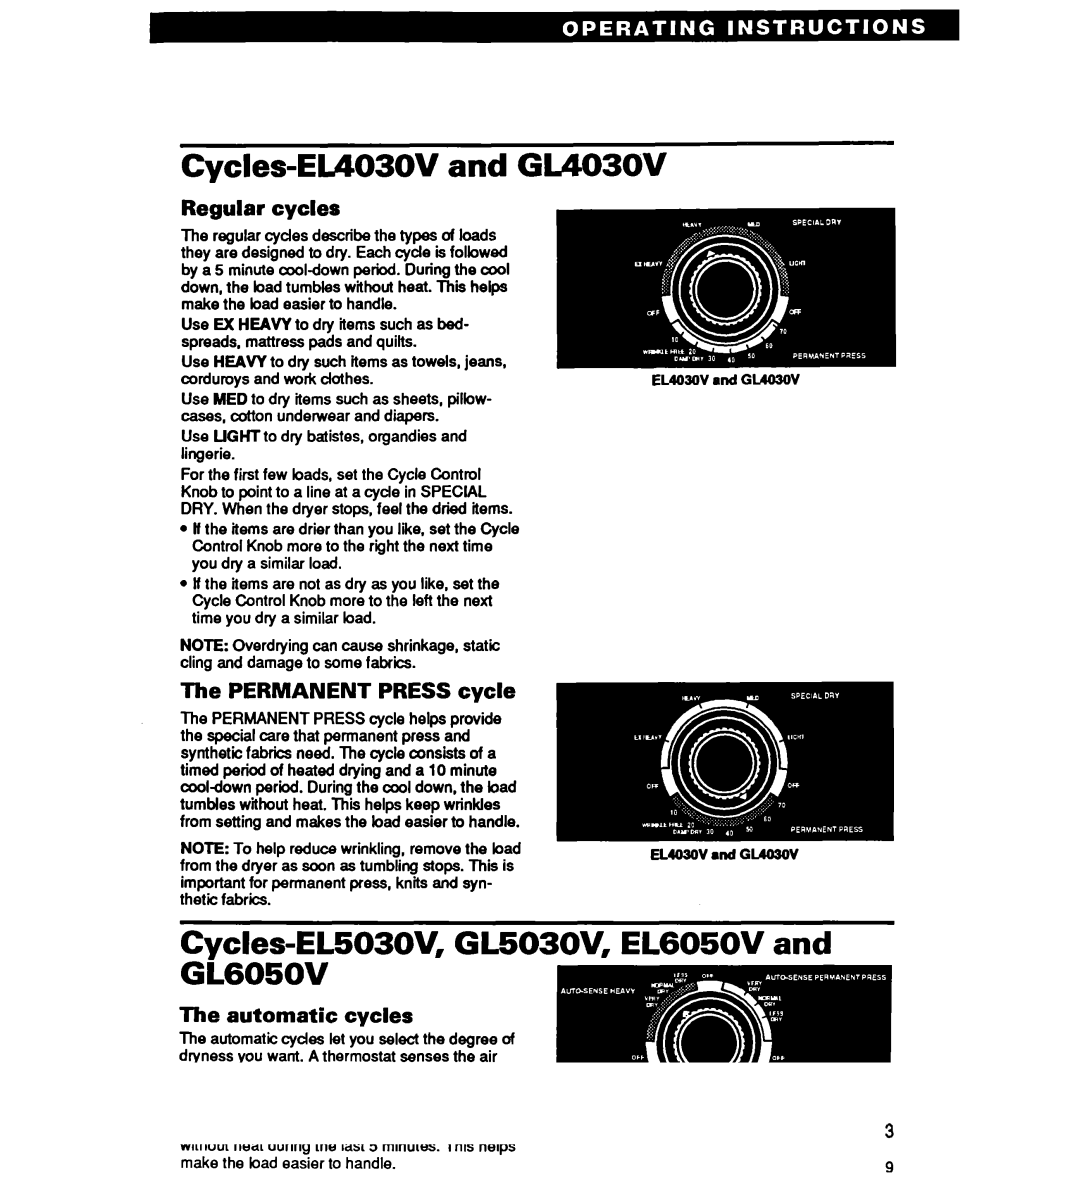 Whirlpool Cycles-EL4030V and GL403OV, Cycles=EL503OV, GL503OV, EL6050V and GL605OV, Regular cycles, Automatic cycles 